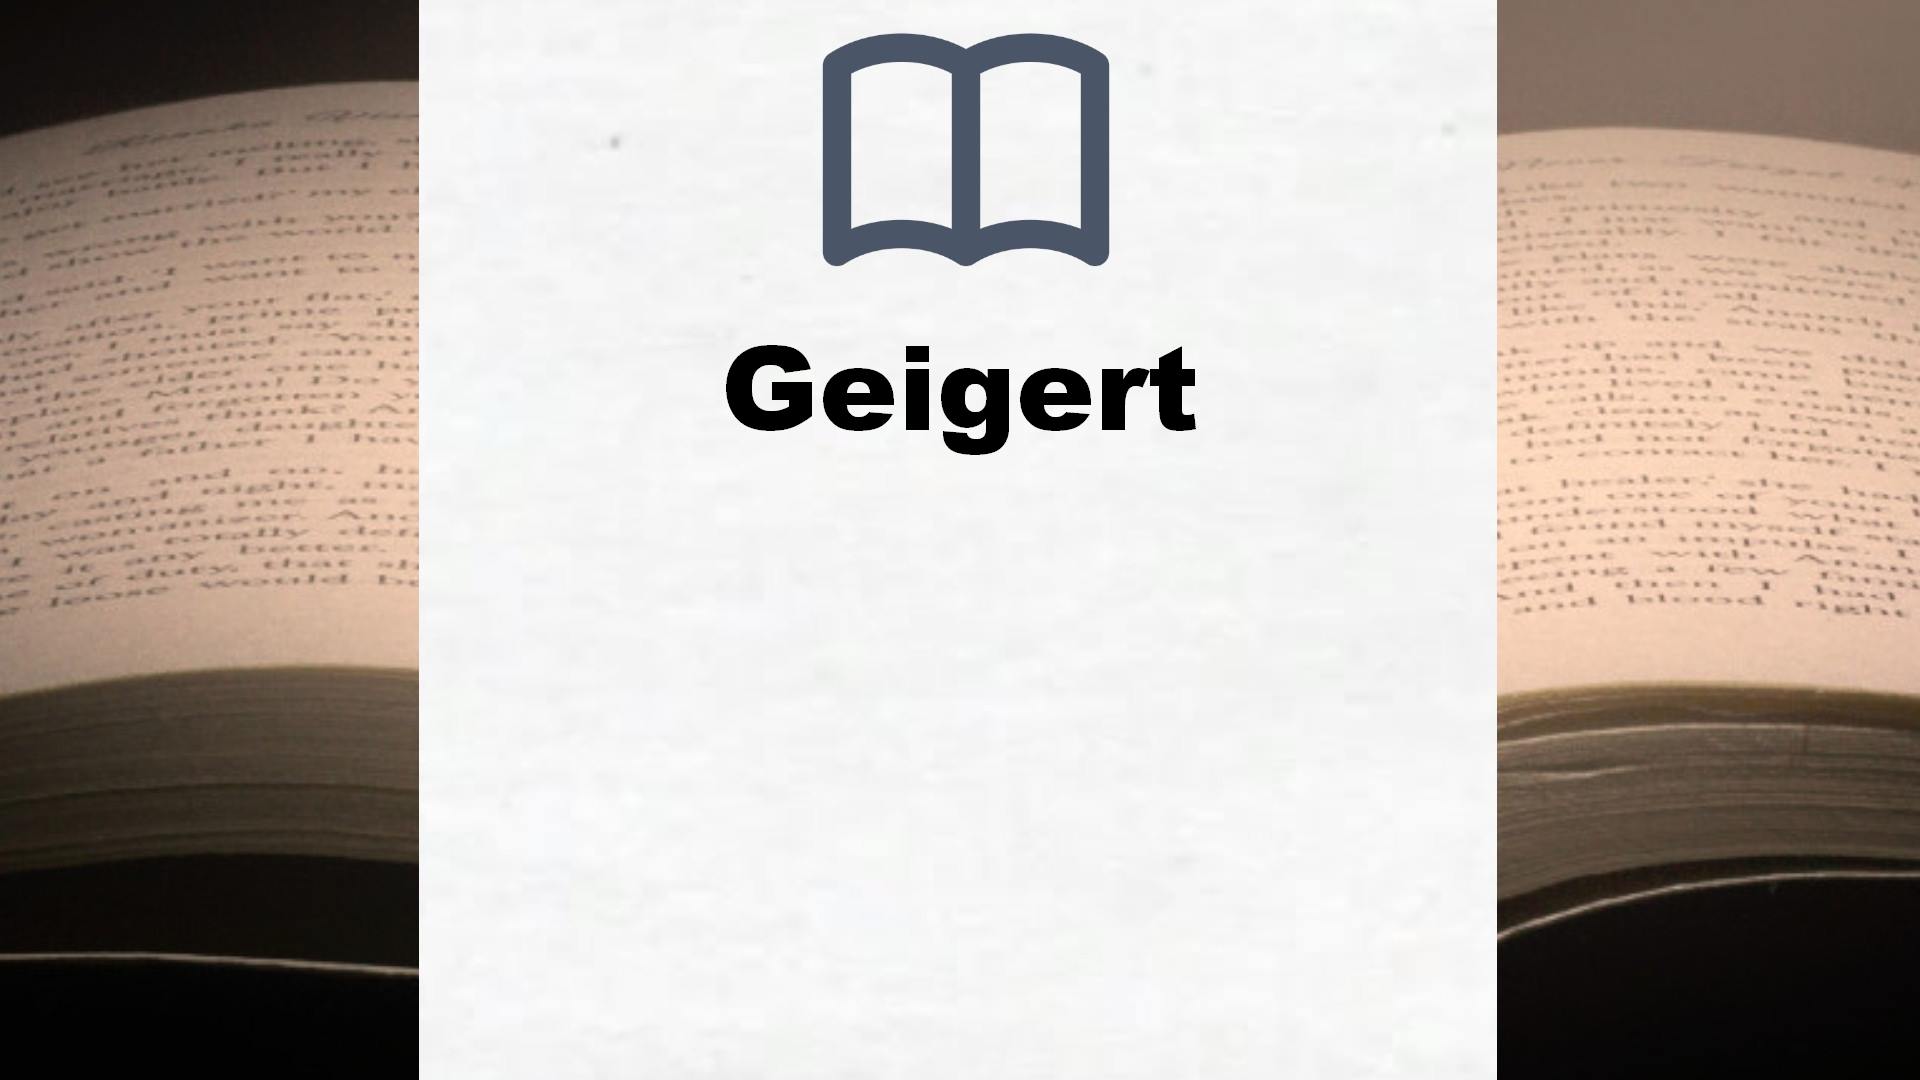 Bücher über Geigert